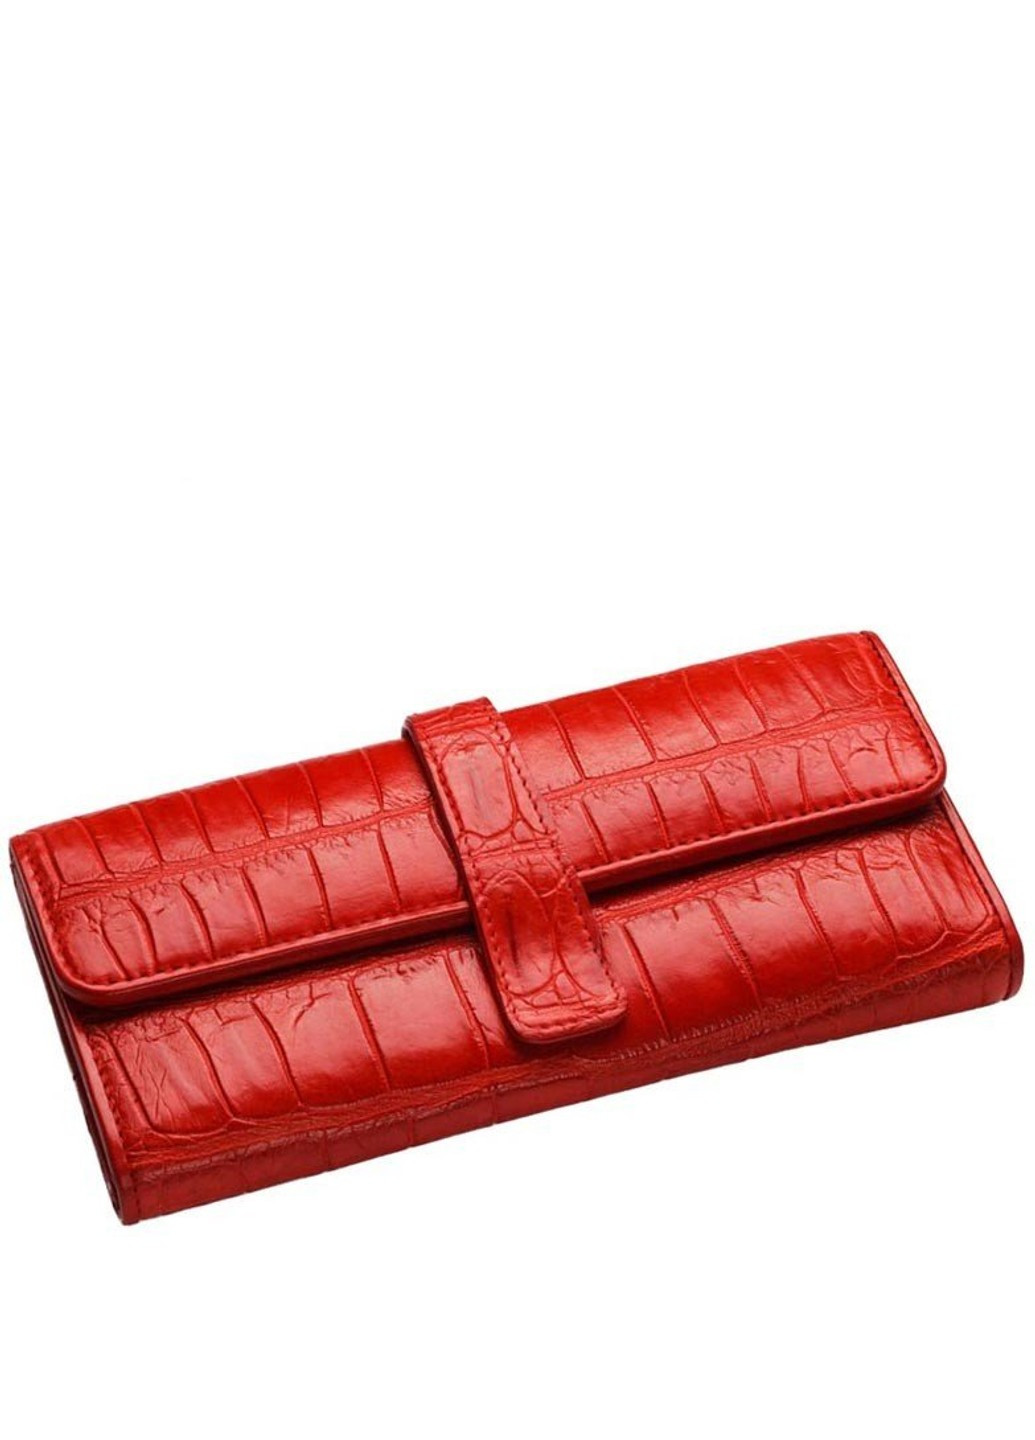 Женский красный кошелек из кожи крокодила cw24 Ekzotic Leather (269089374)